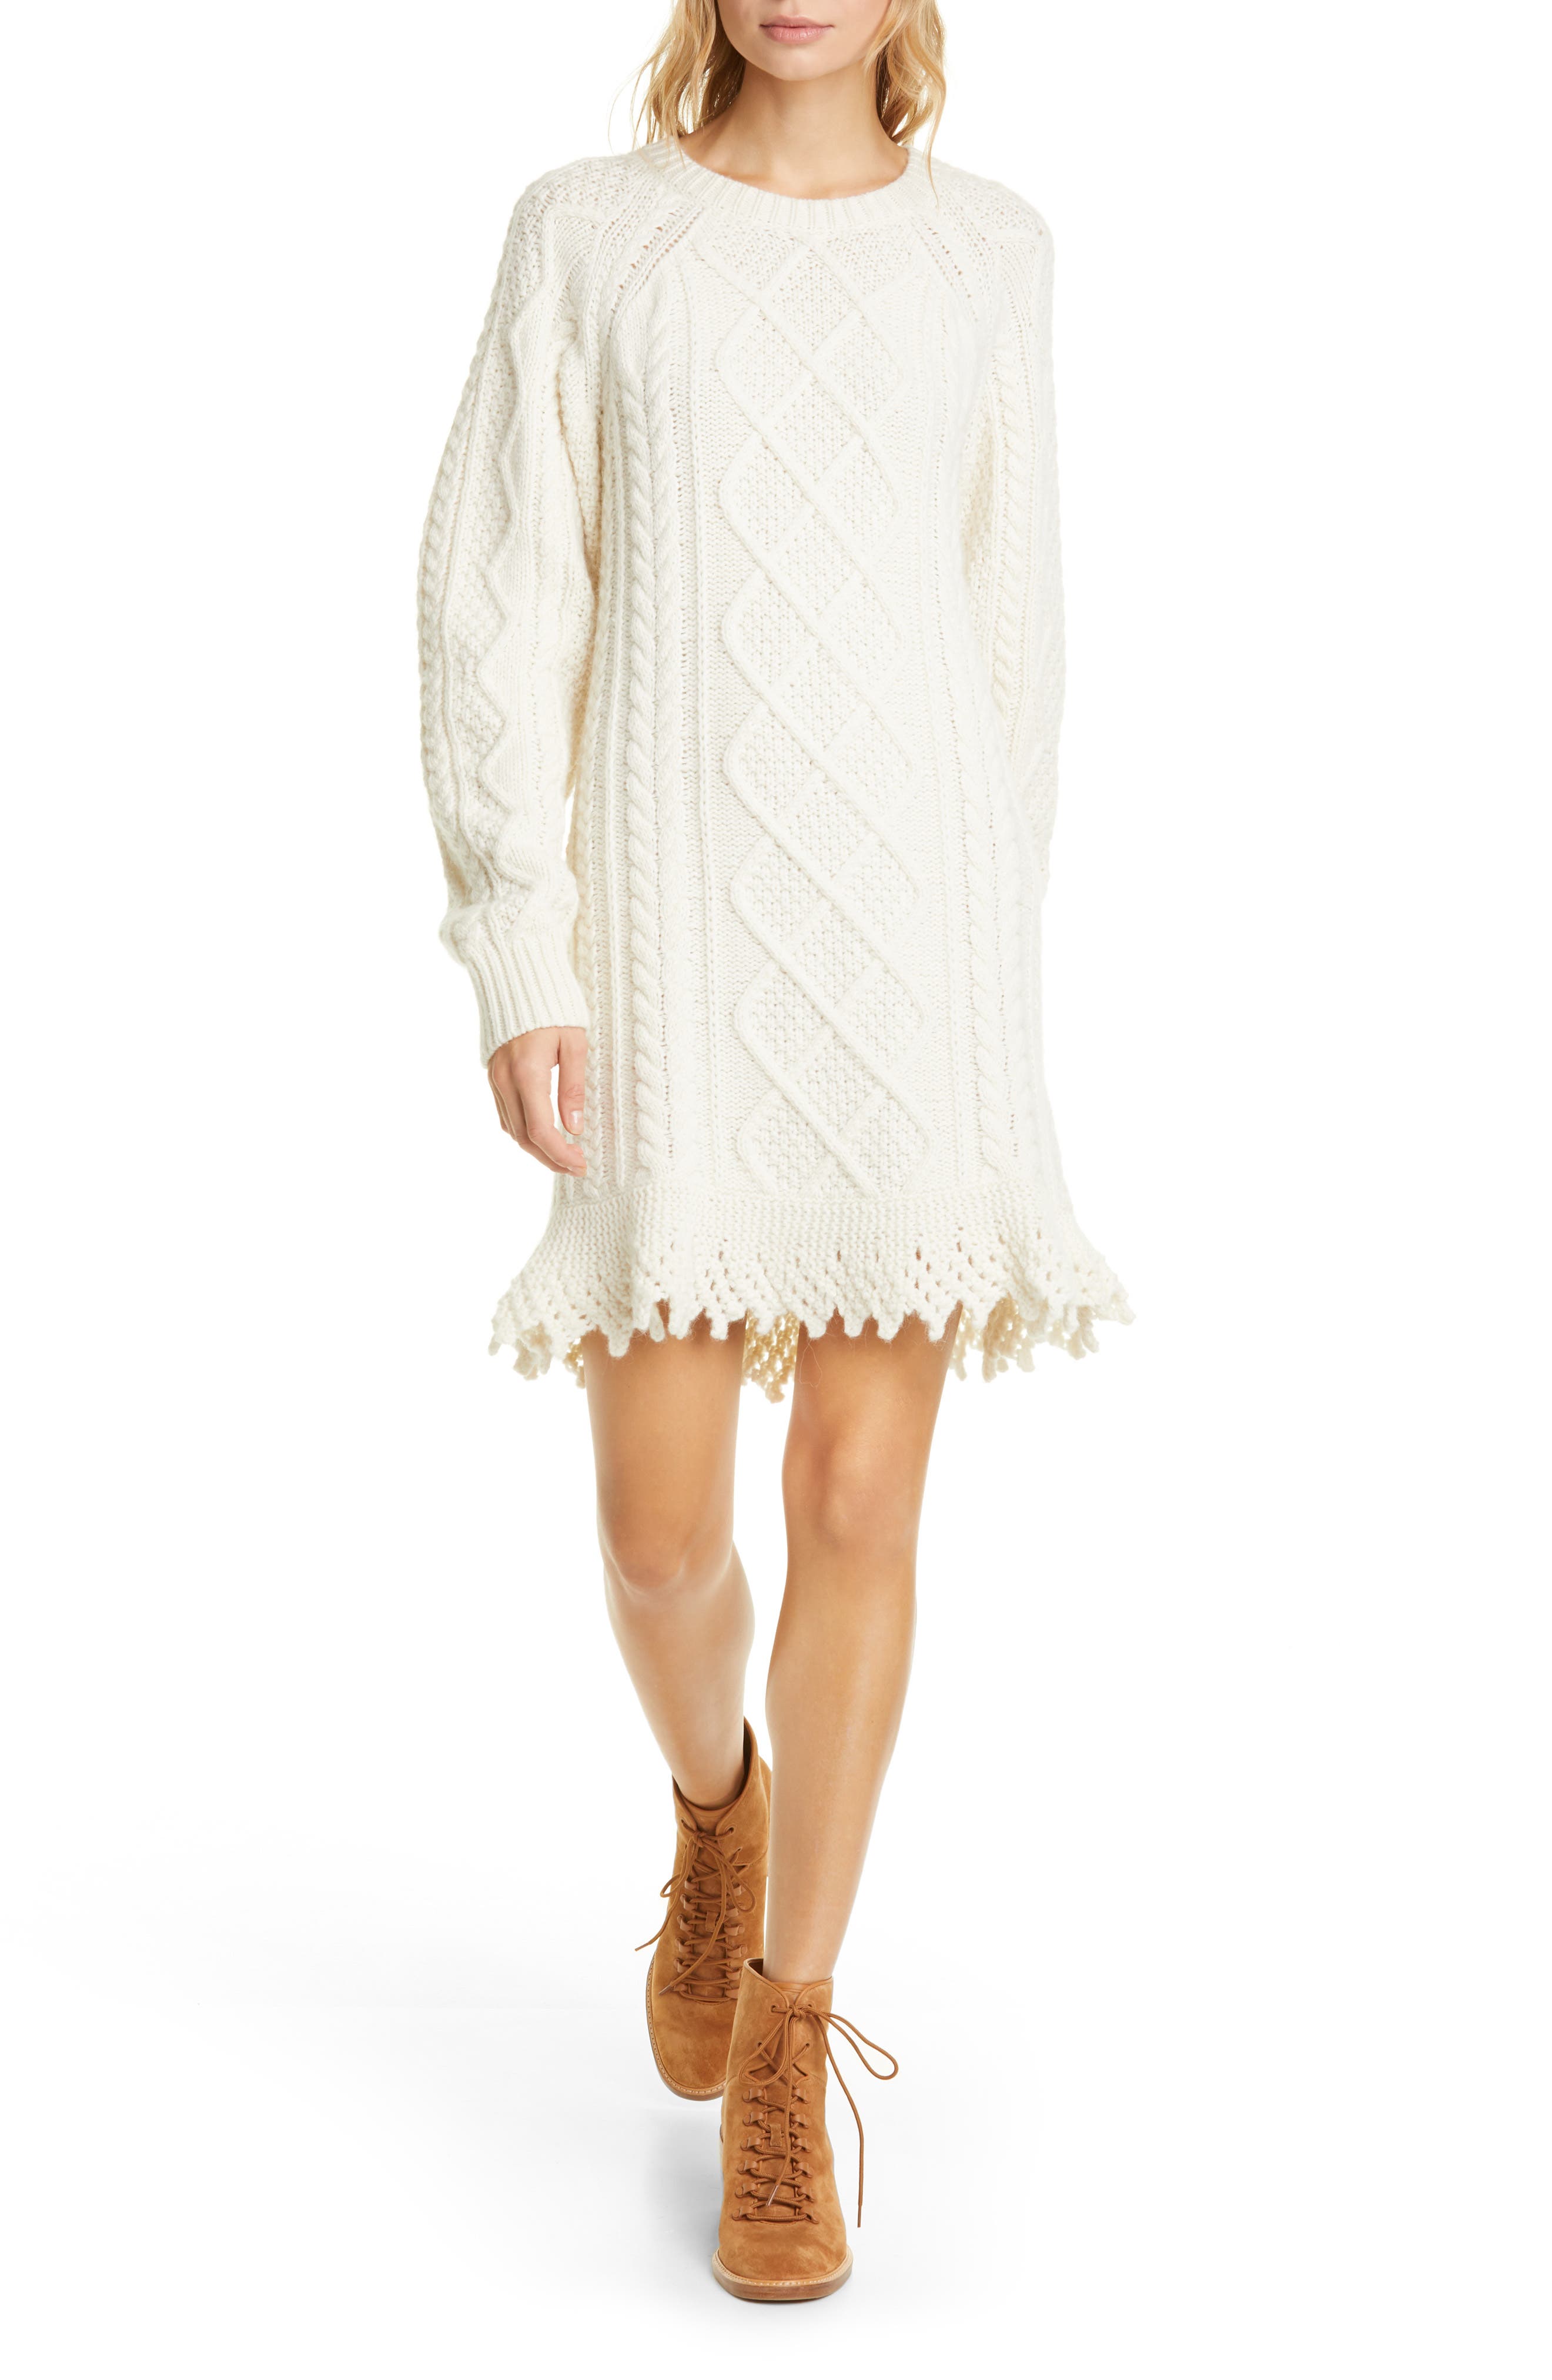 polo ralph lauren sweater dress